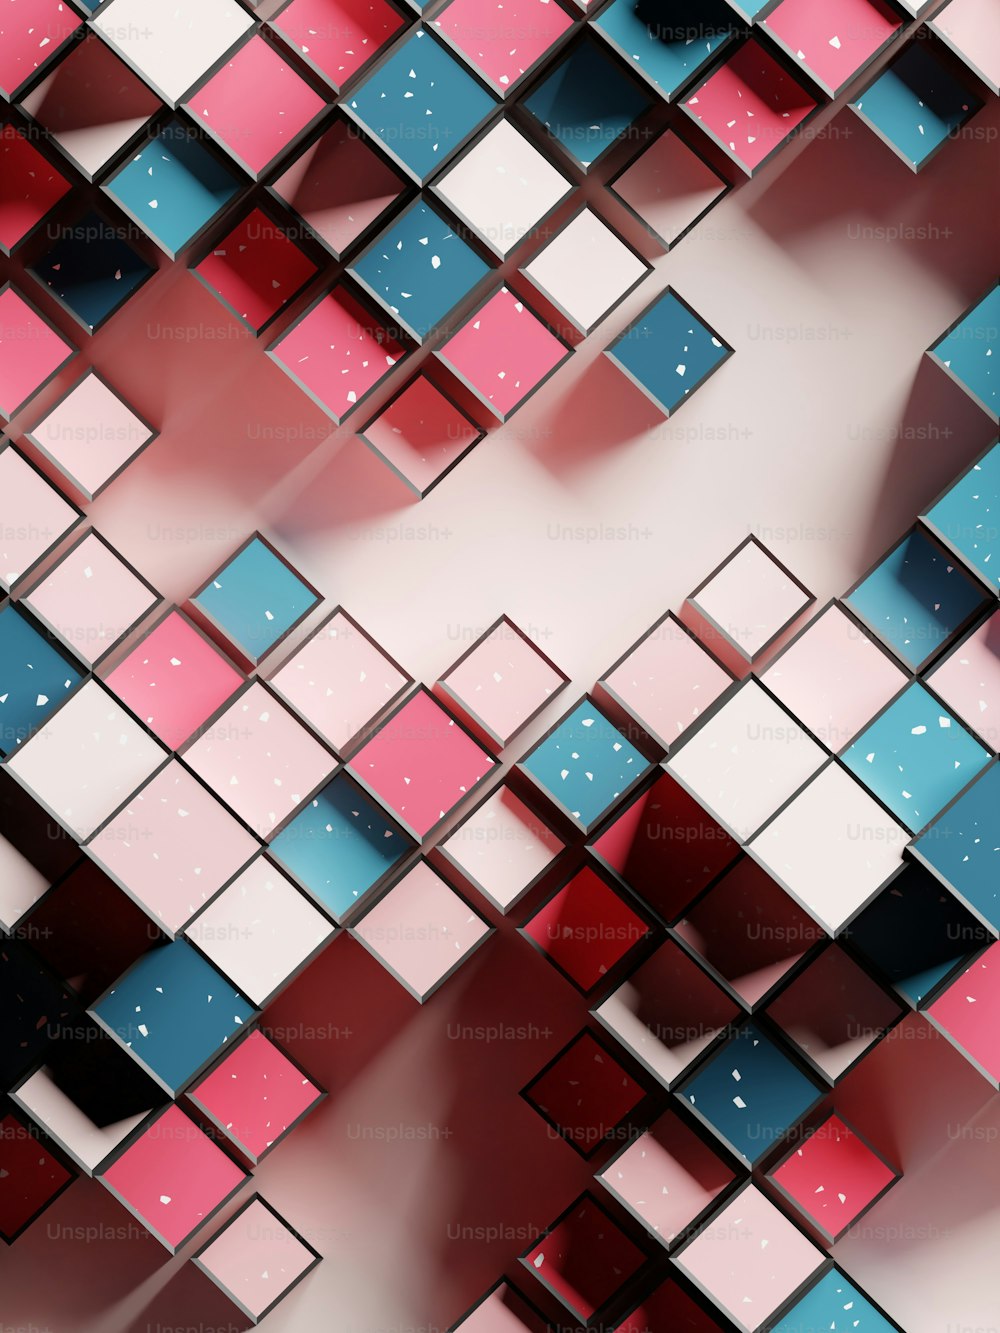 Une image abstraite de carrés roses et bleus